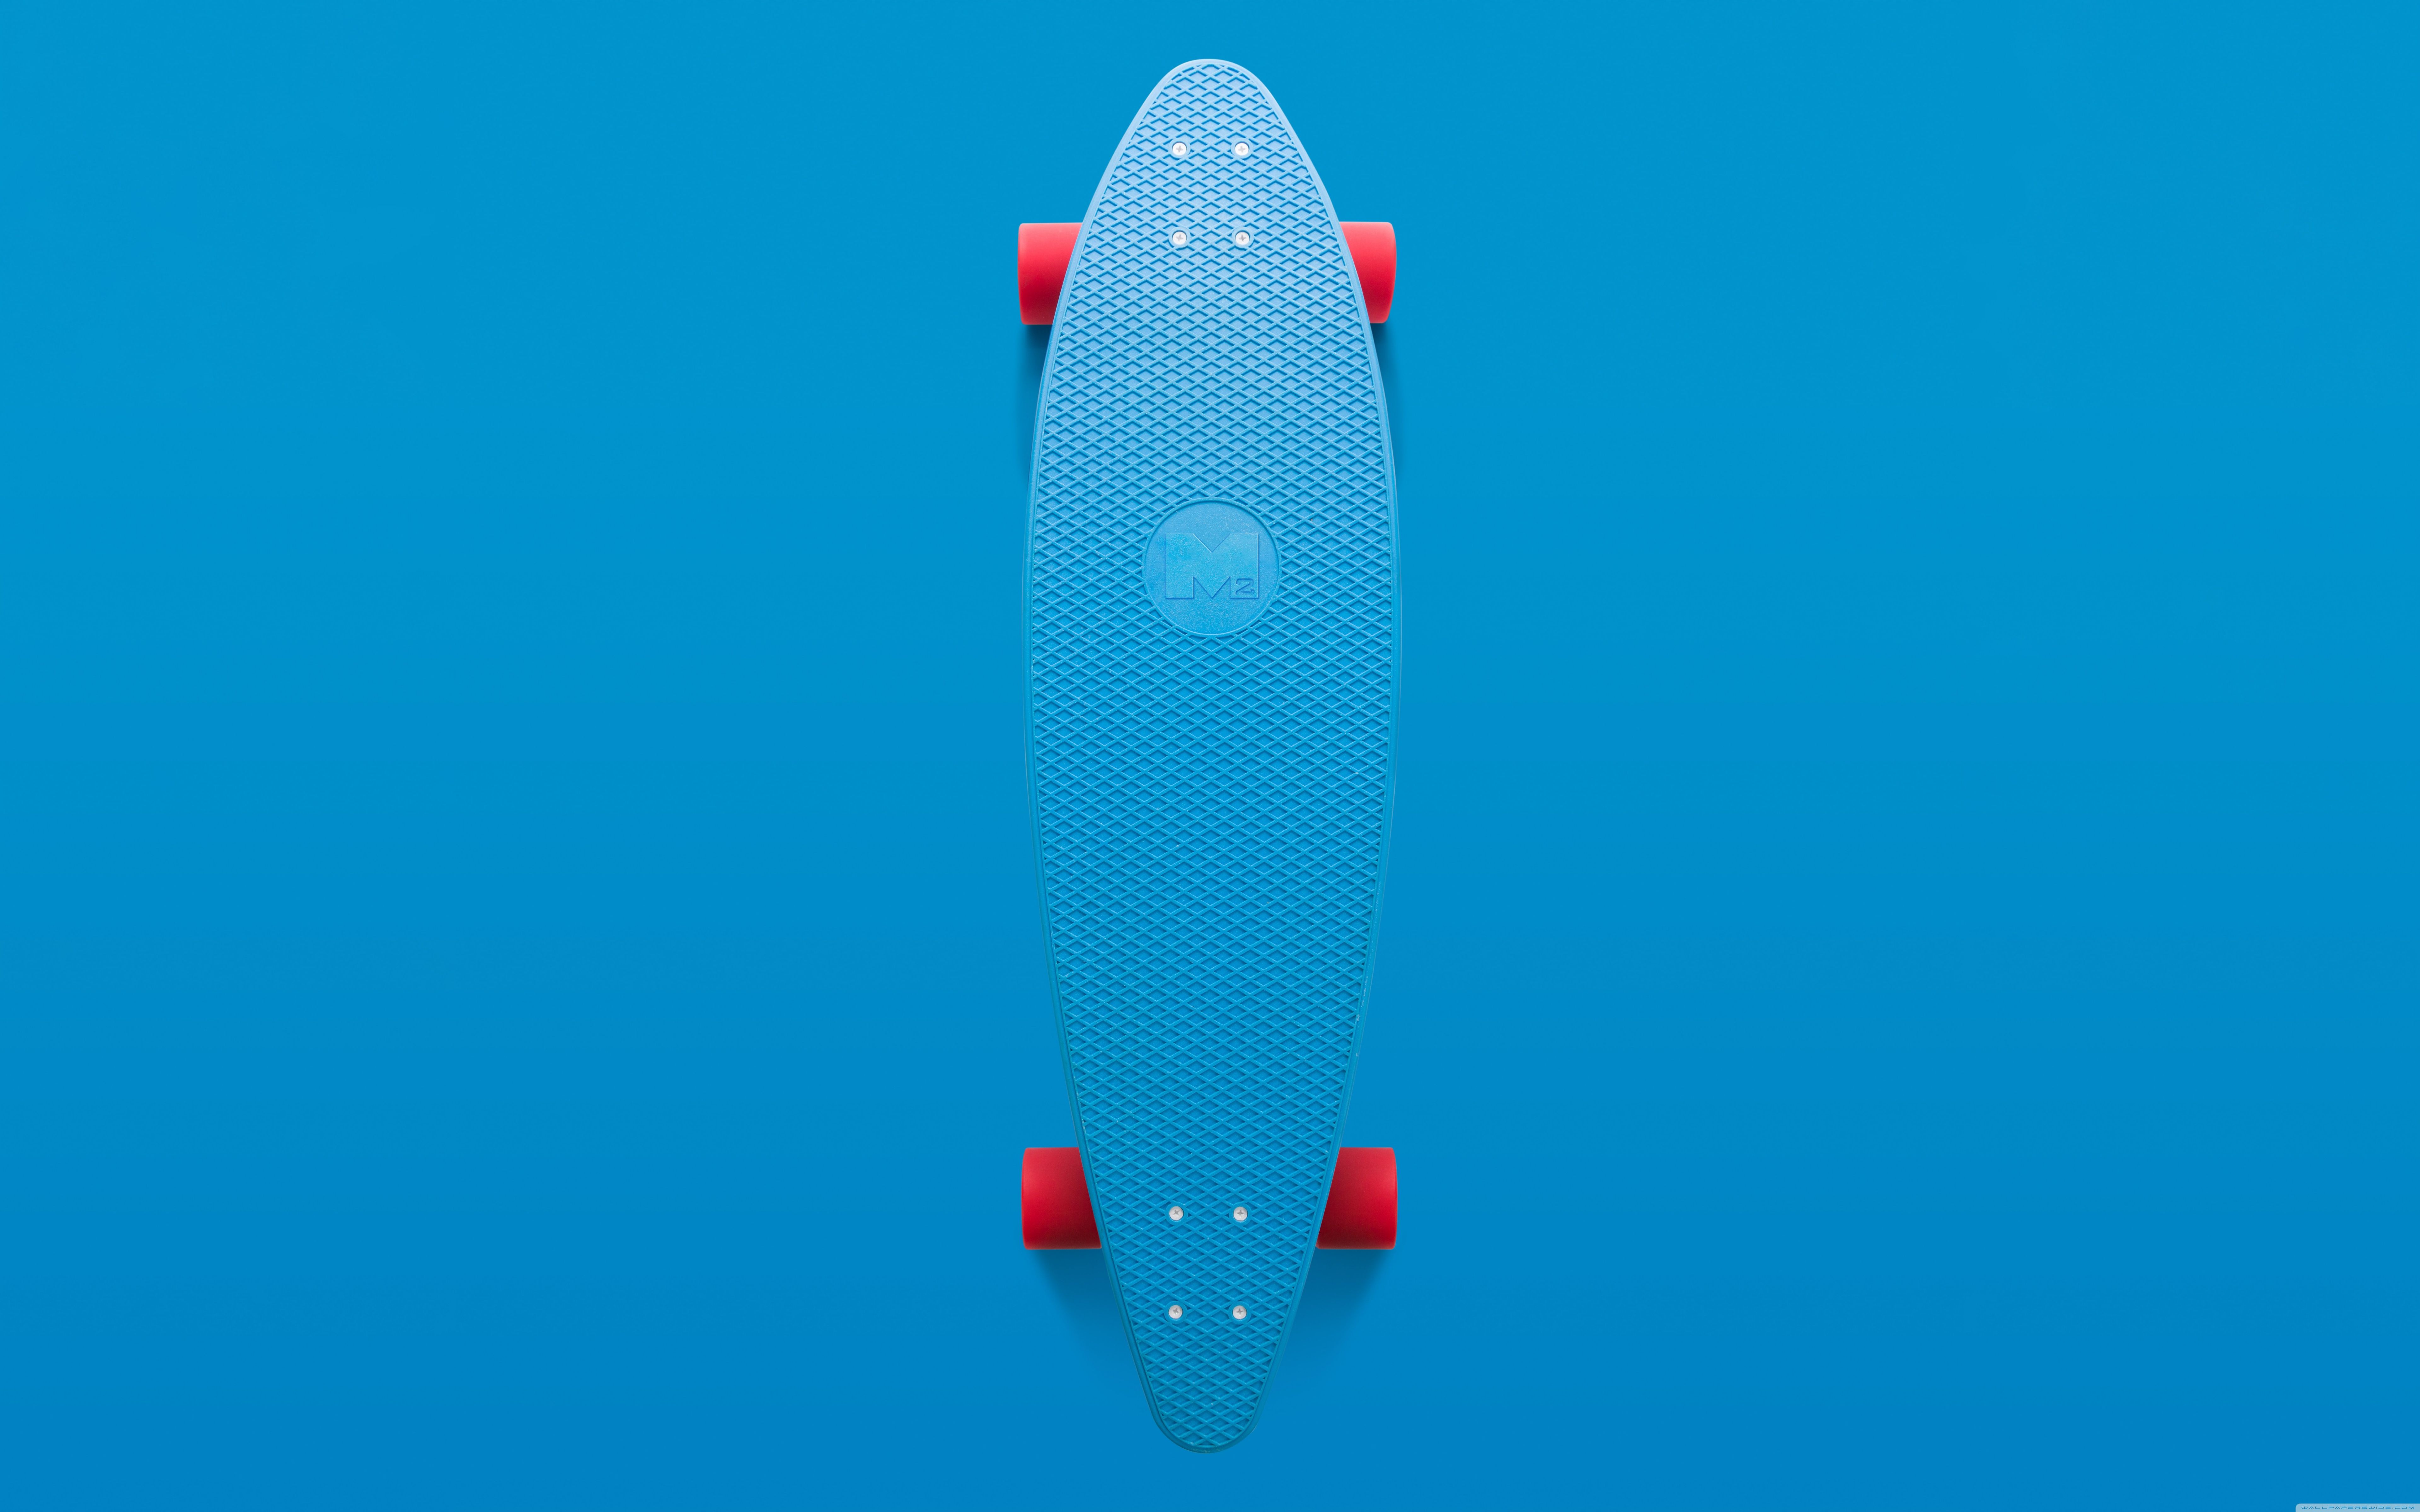 Skateboard Aesthetic Ultra HD Desktop Background Wallpaper for 4K UHD TV, Widescreen & UltraWide Desktop & Laptop, Tablet